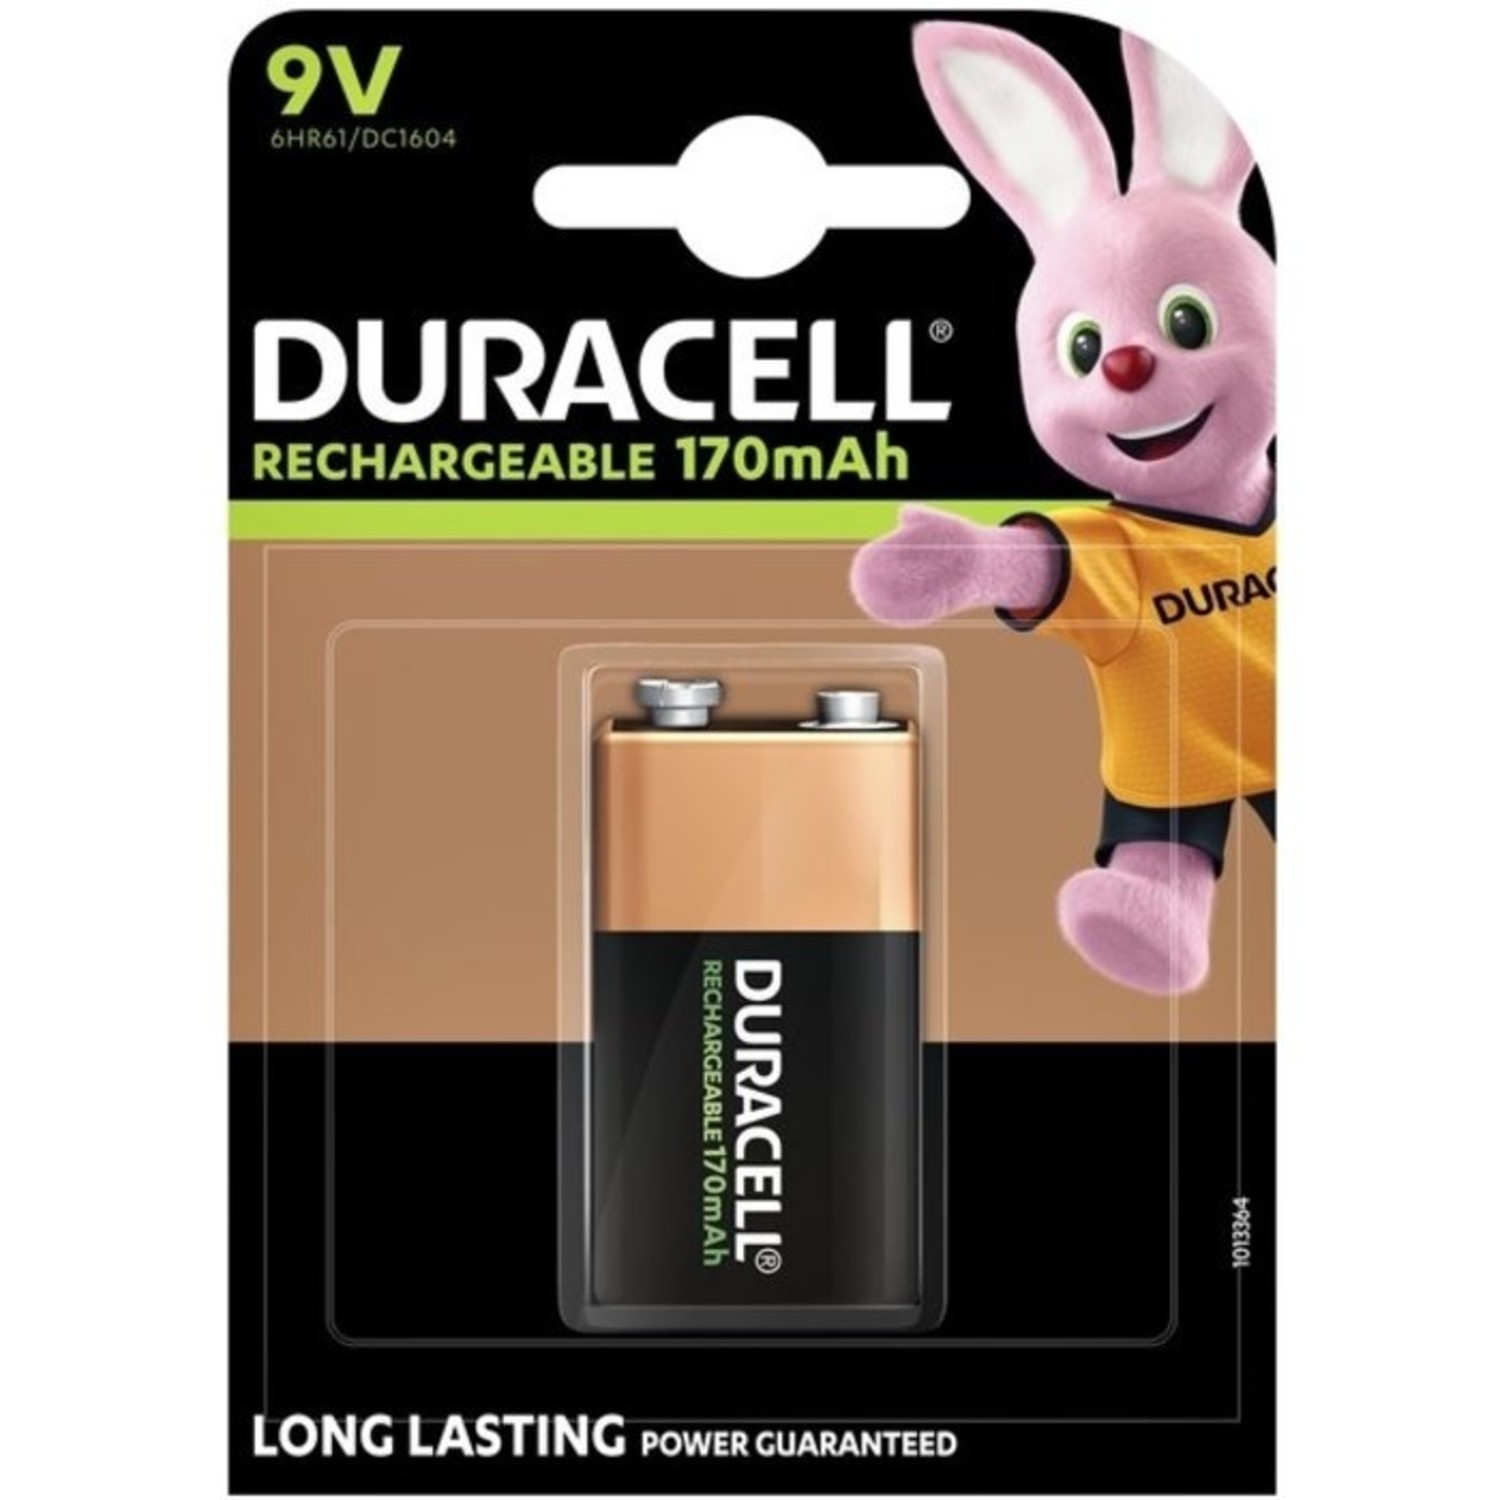 lezer molen Verloren Duracell oplaadbare 9V batterij kopen? - Batterijenstunter.nl